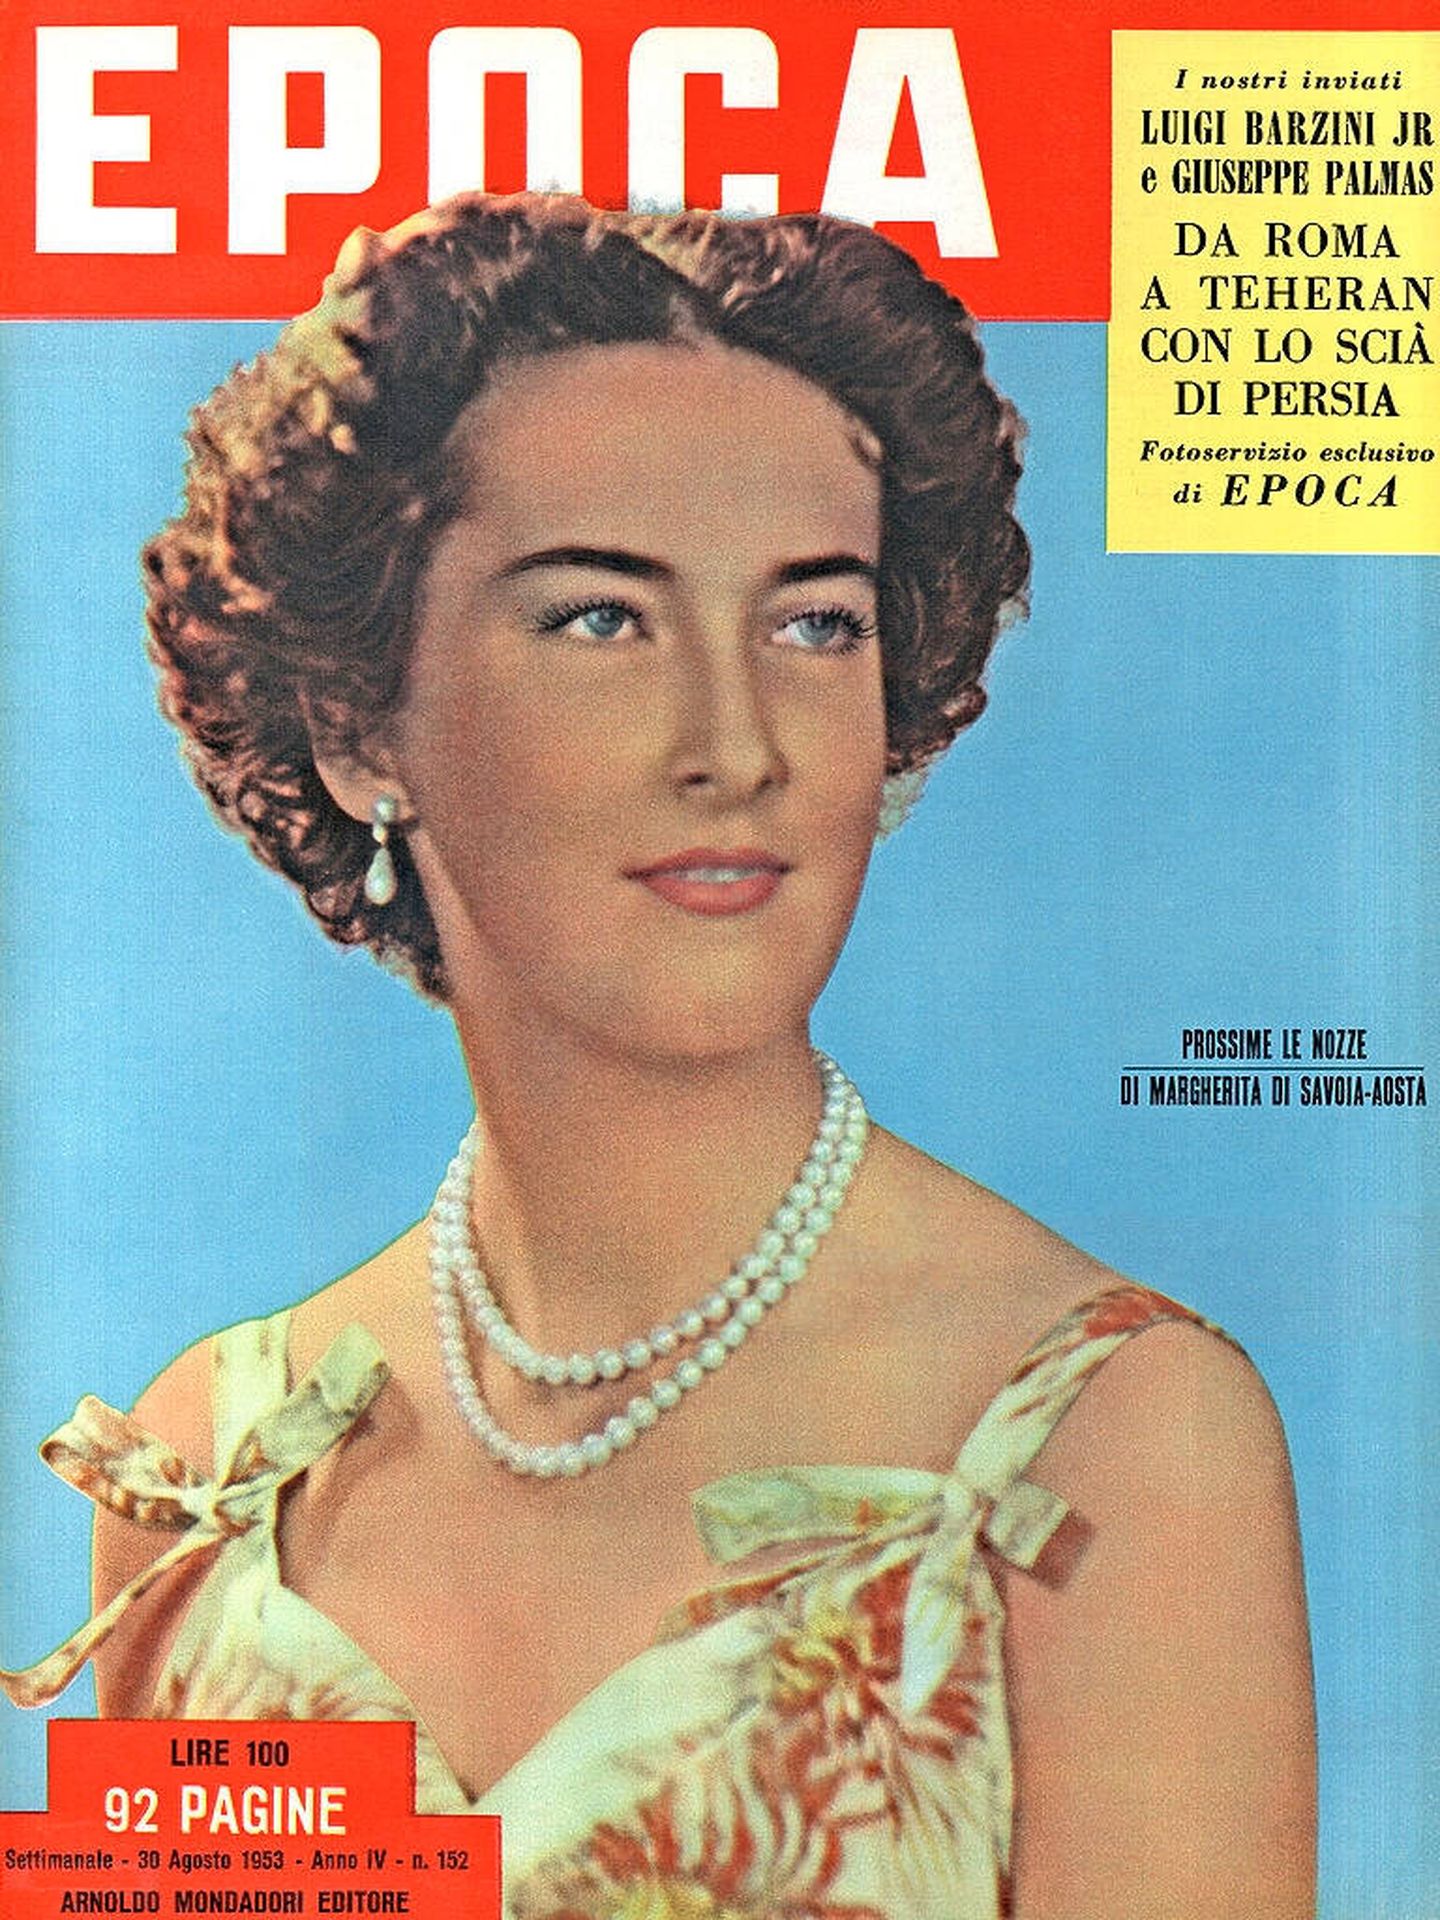 Margarita de Saboya-Aosta, en la portada de la revista italiana época en 1953.